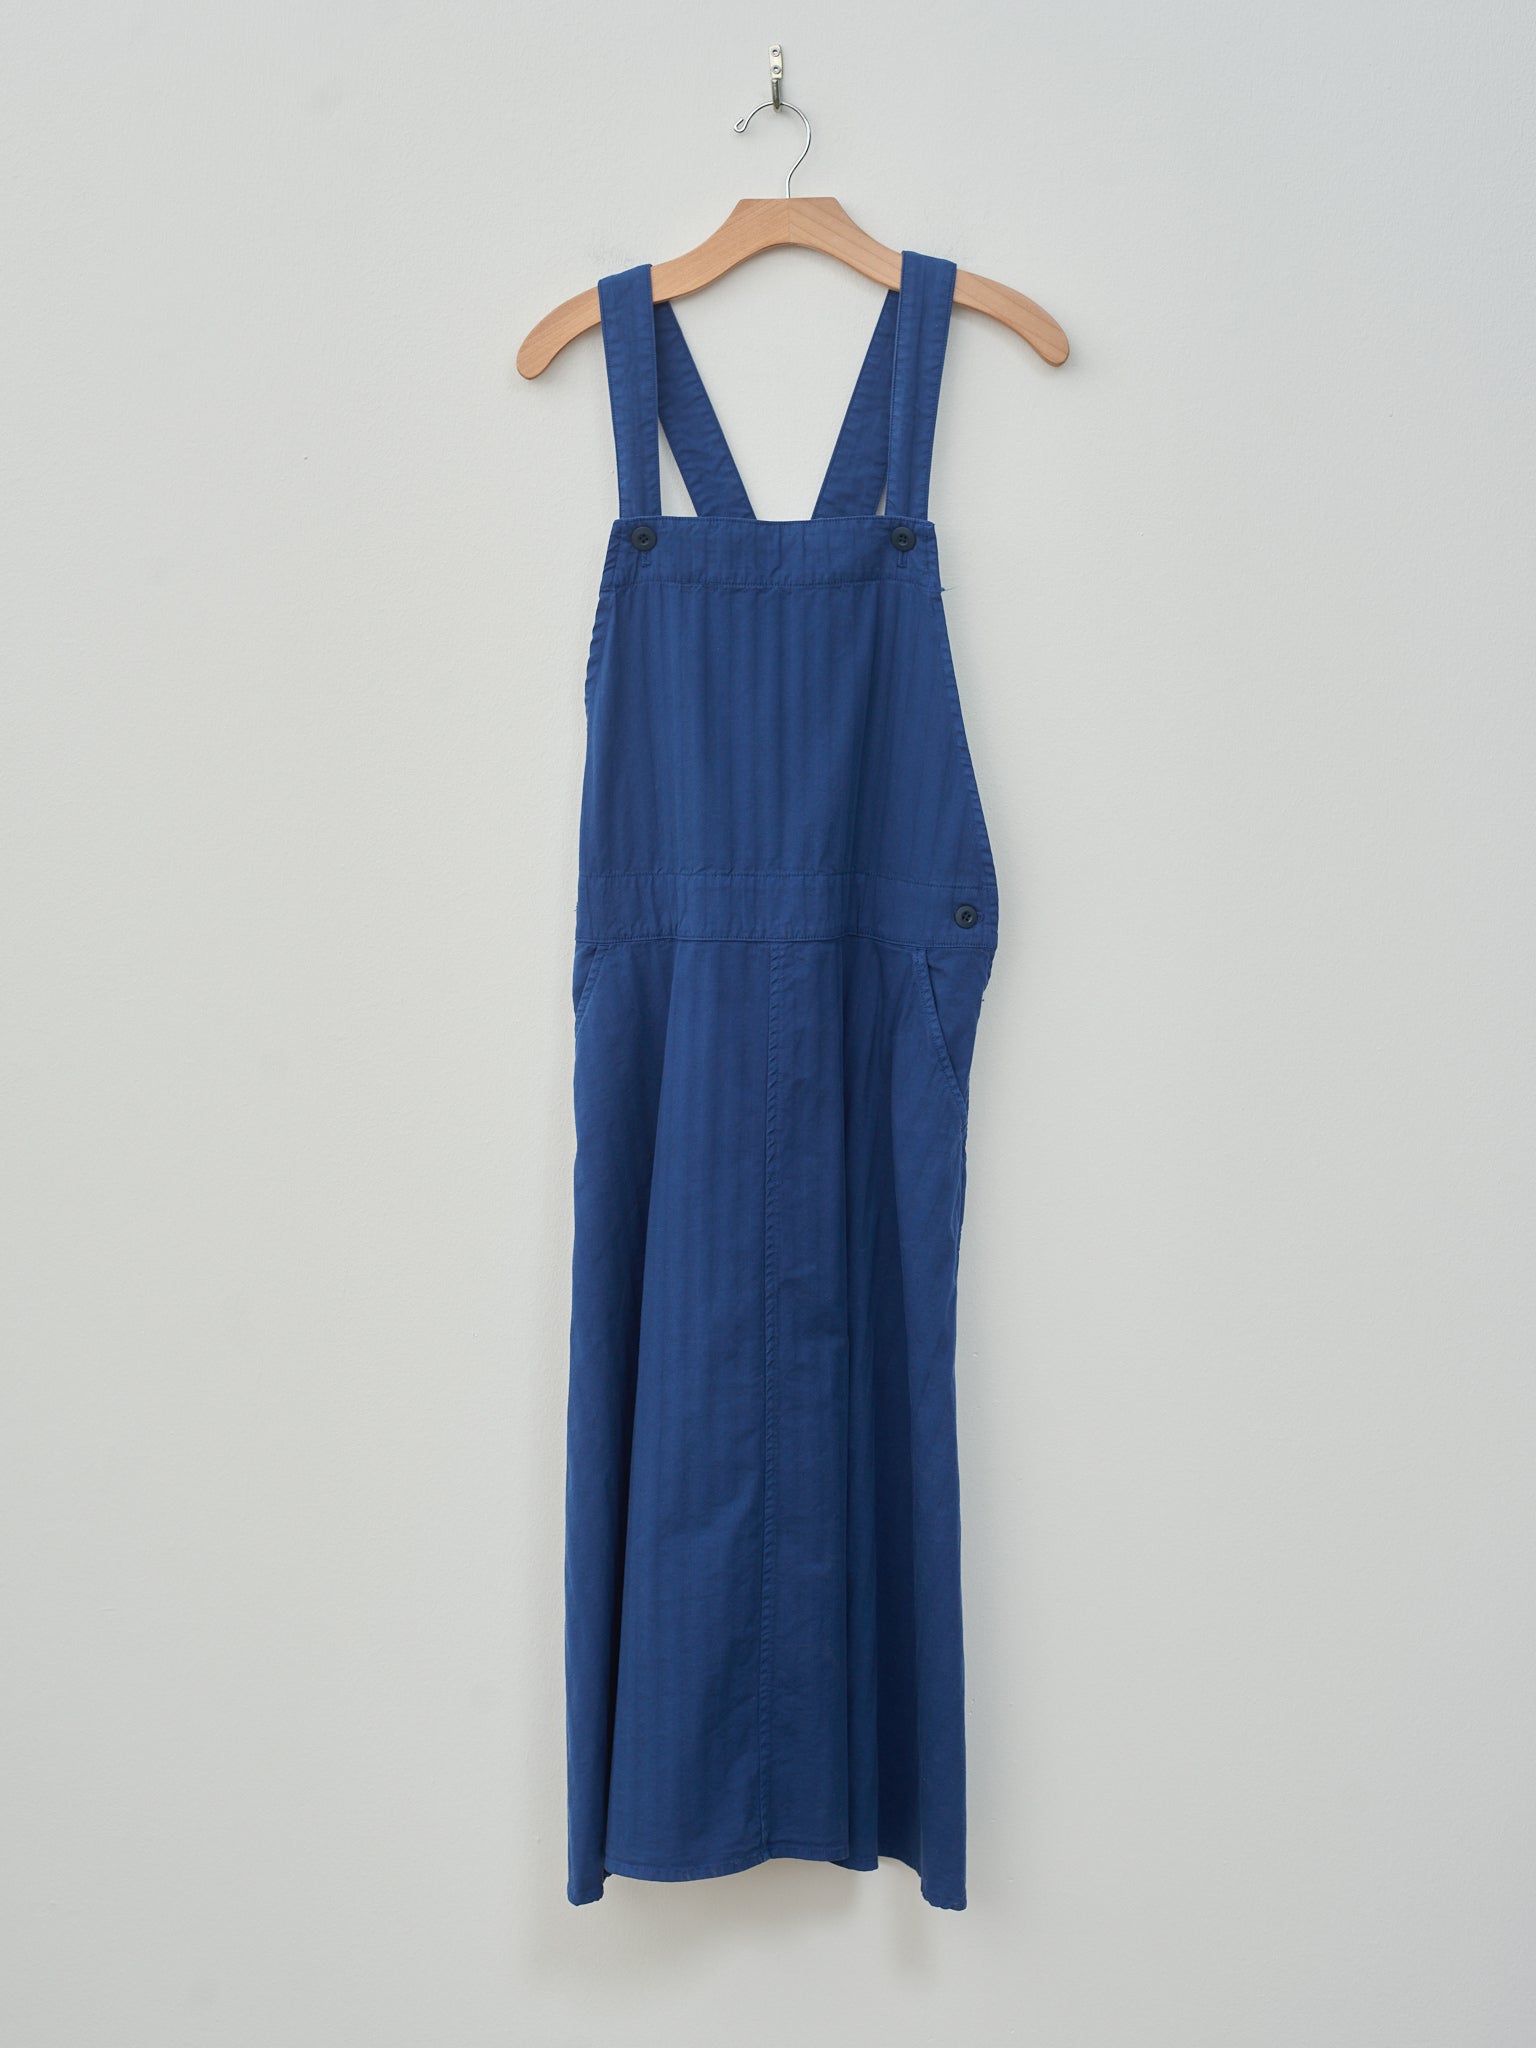 Namu Shop - ts(s) Garment Dyed Wide Herringbone Bib Overall Skirt - Royal